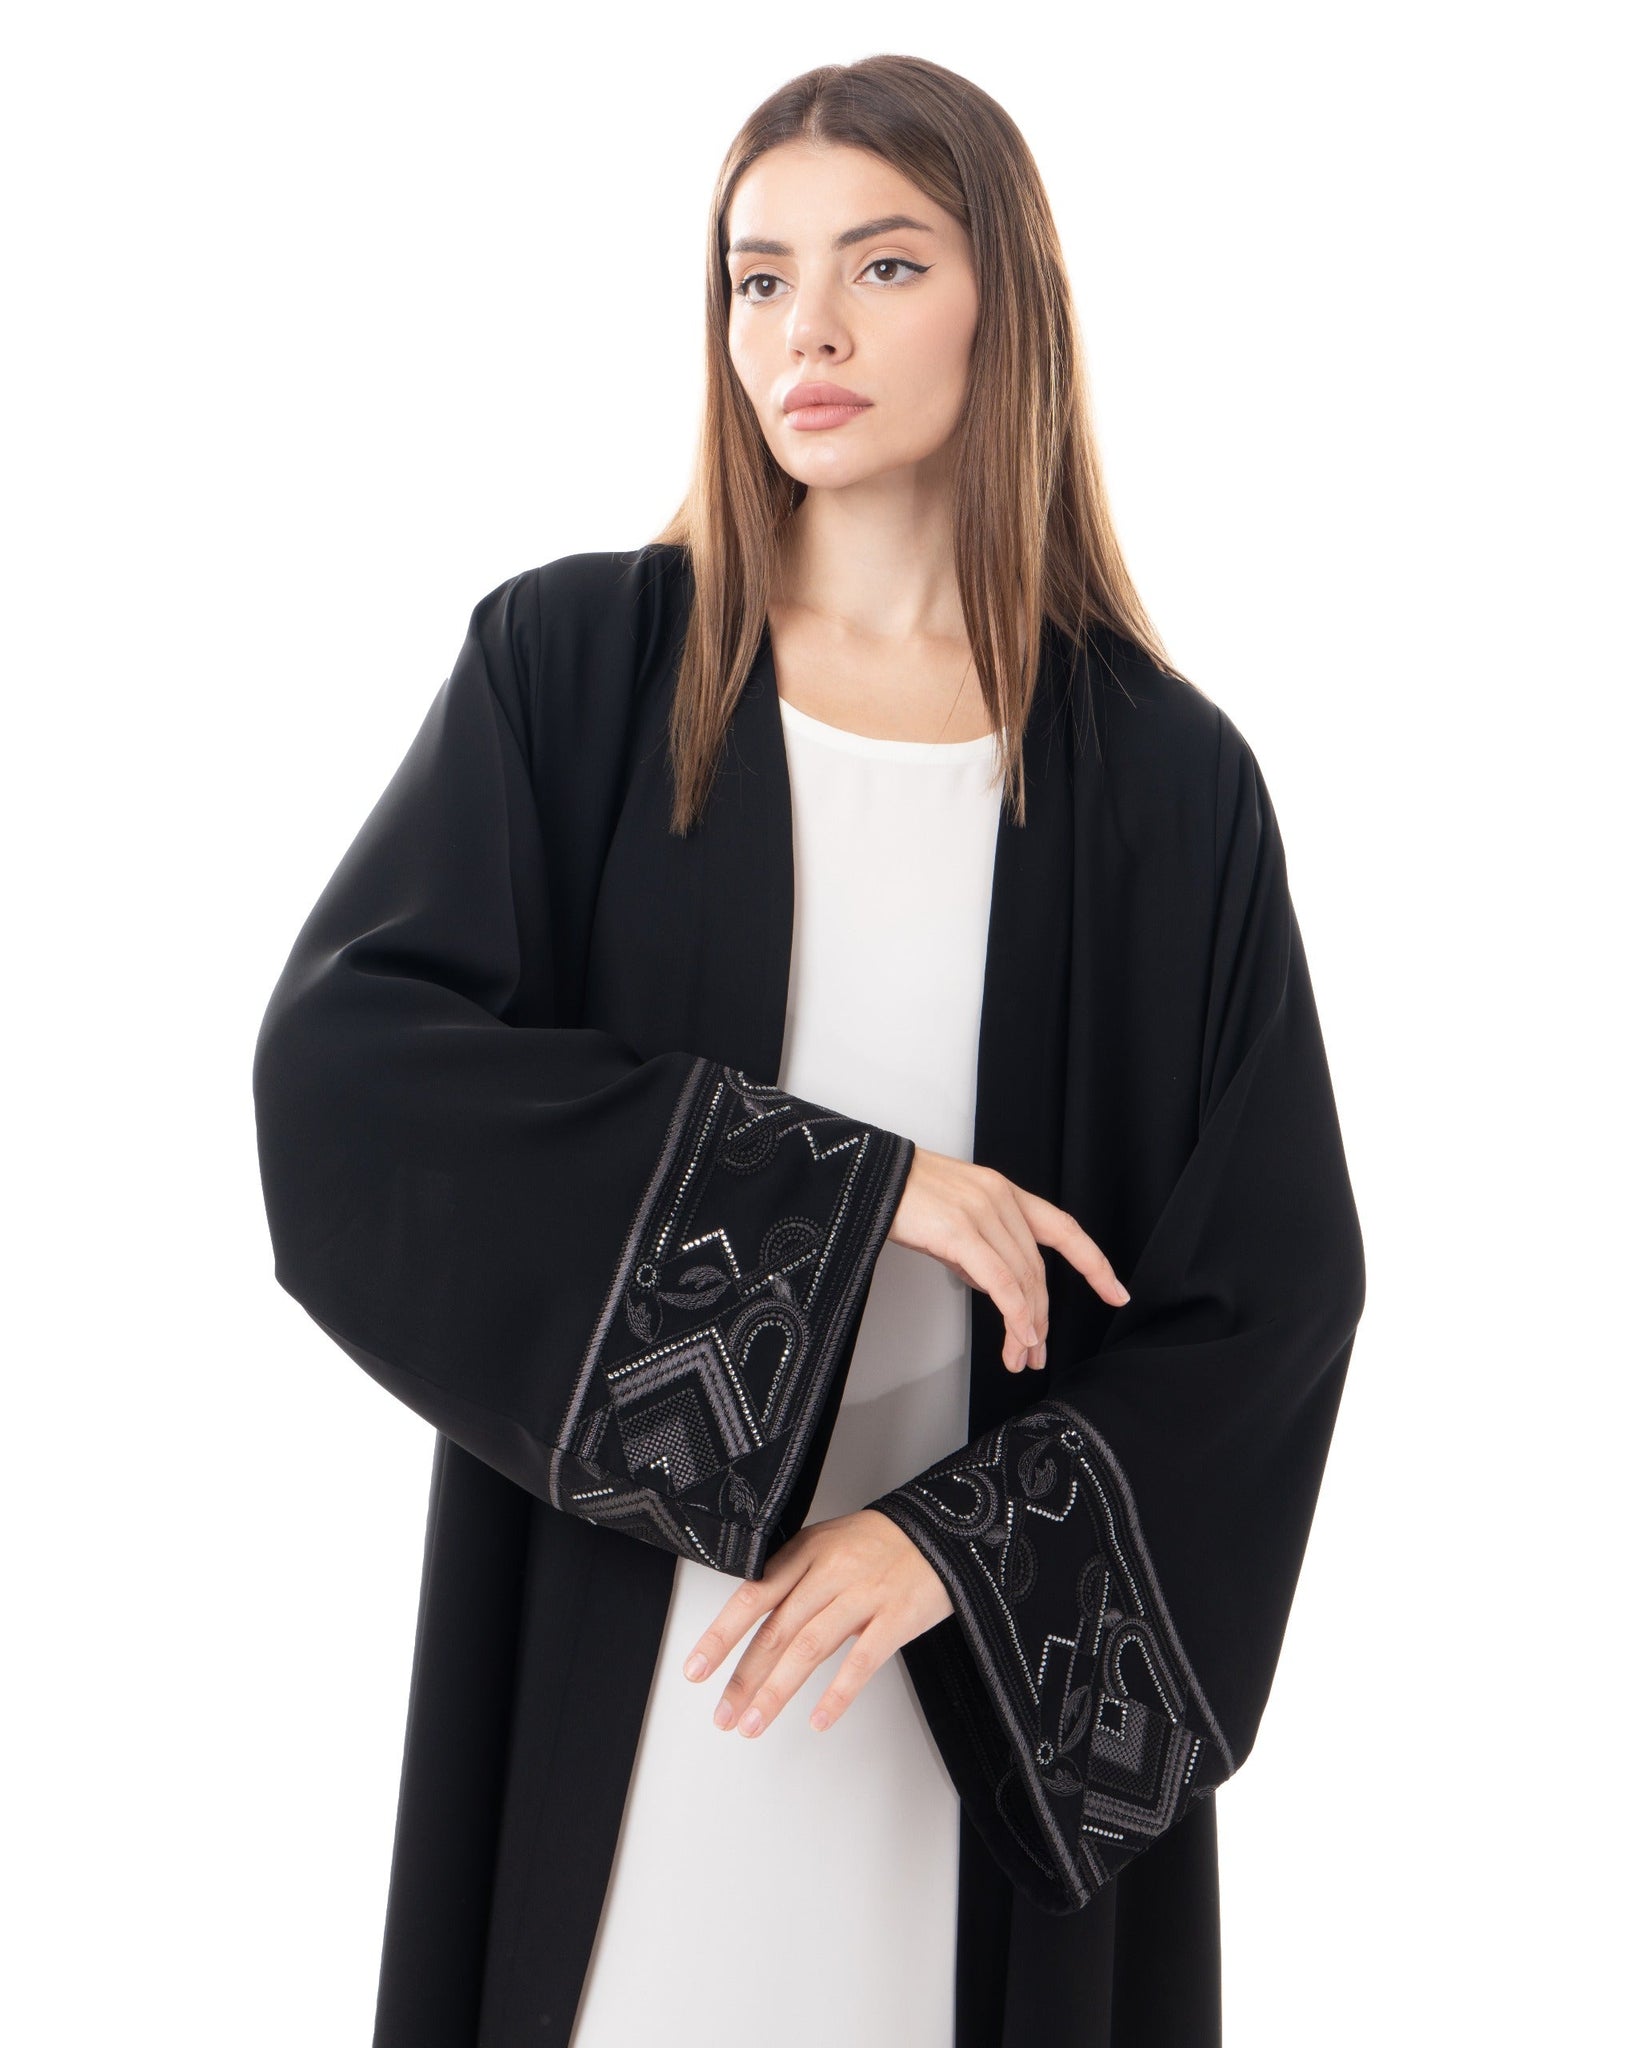 Hanayen Elegant Black Abaya With Embroidered Cuffs